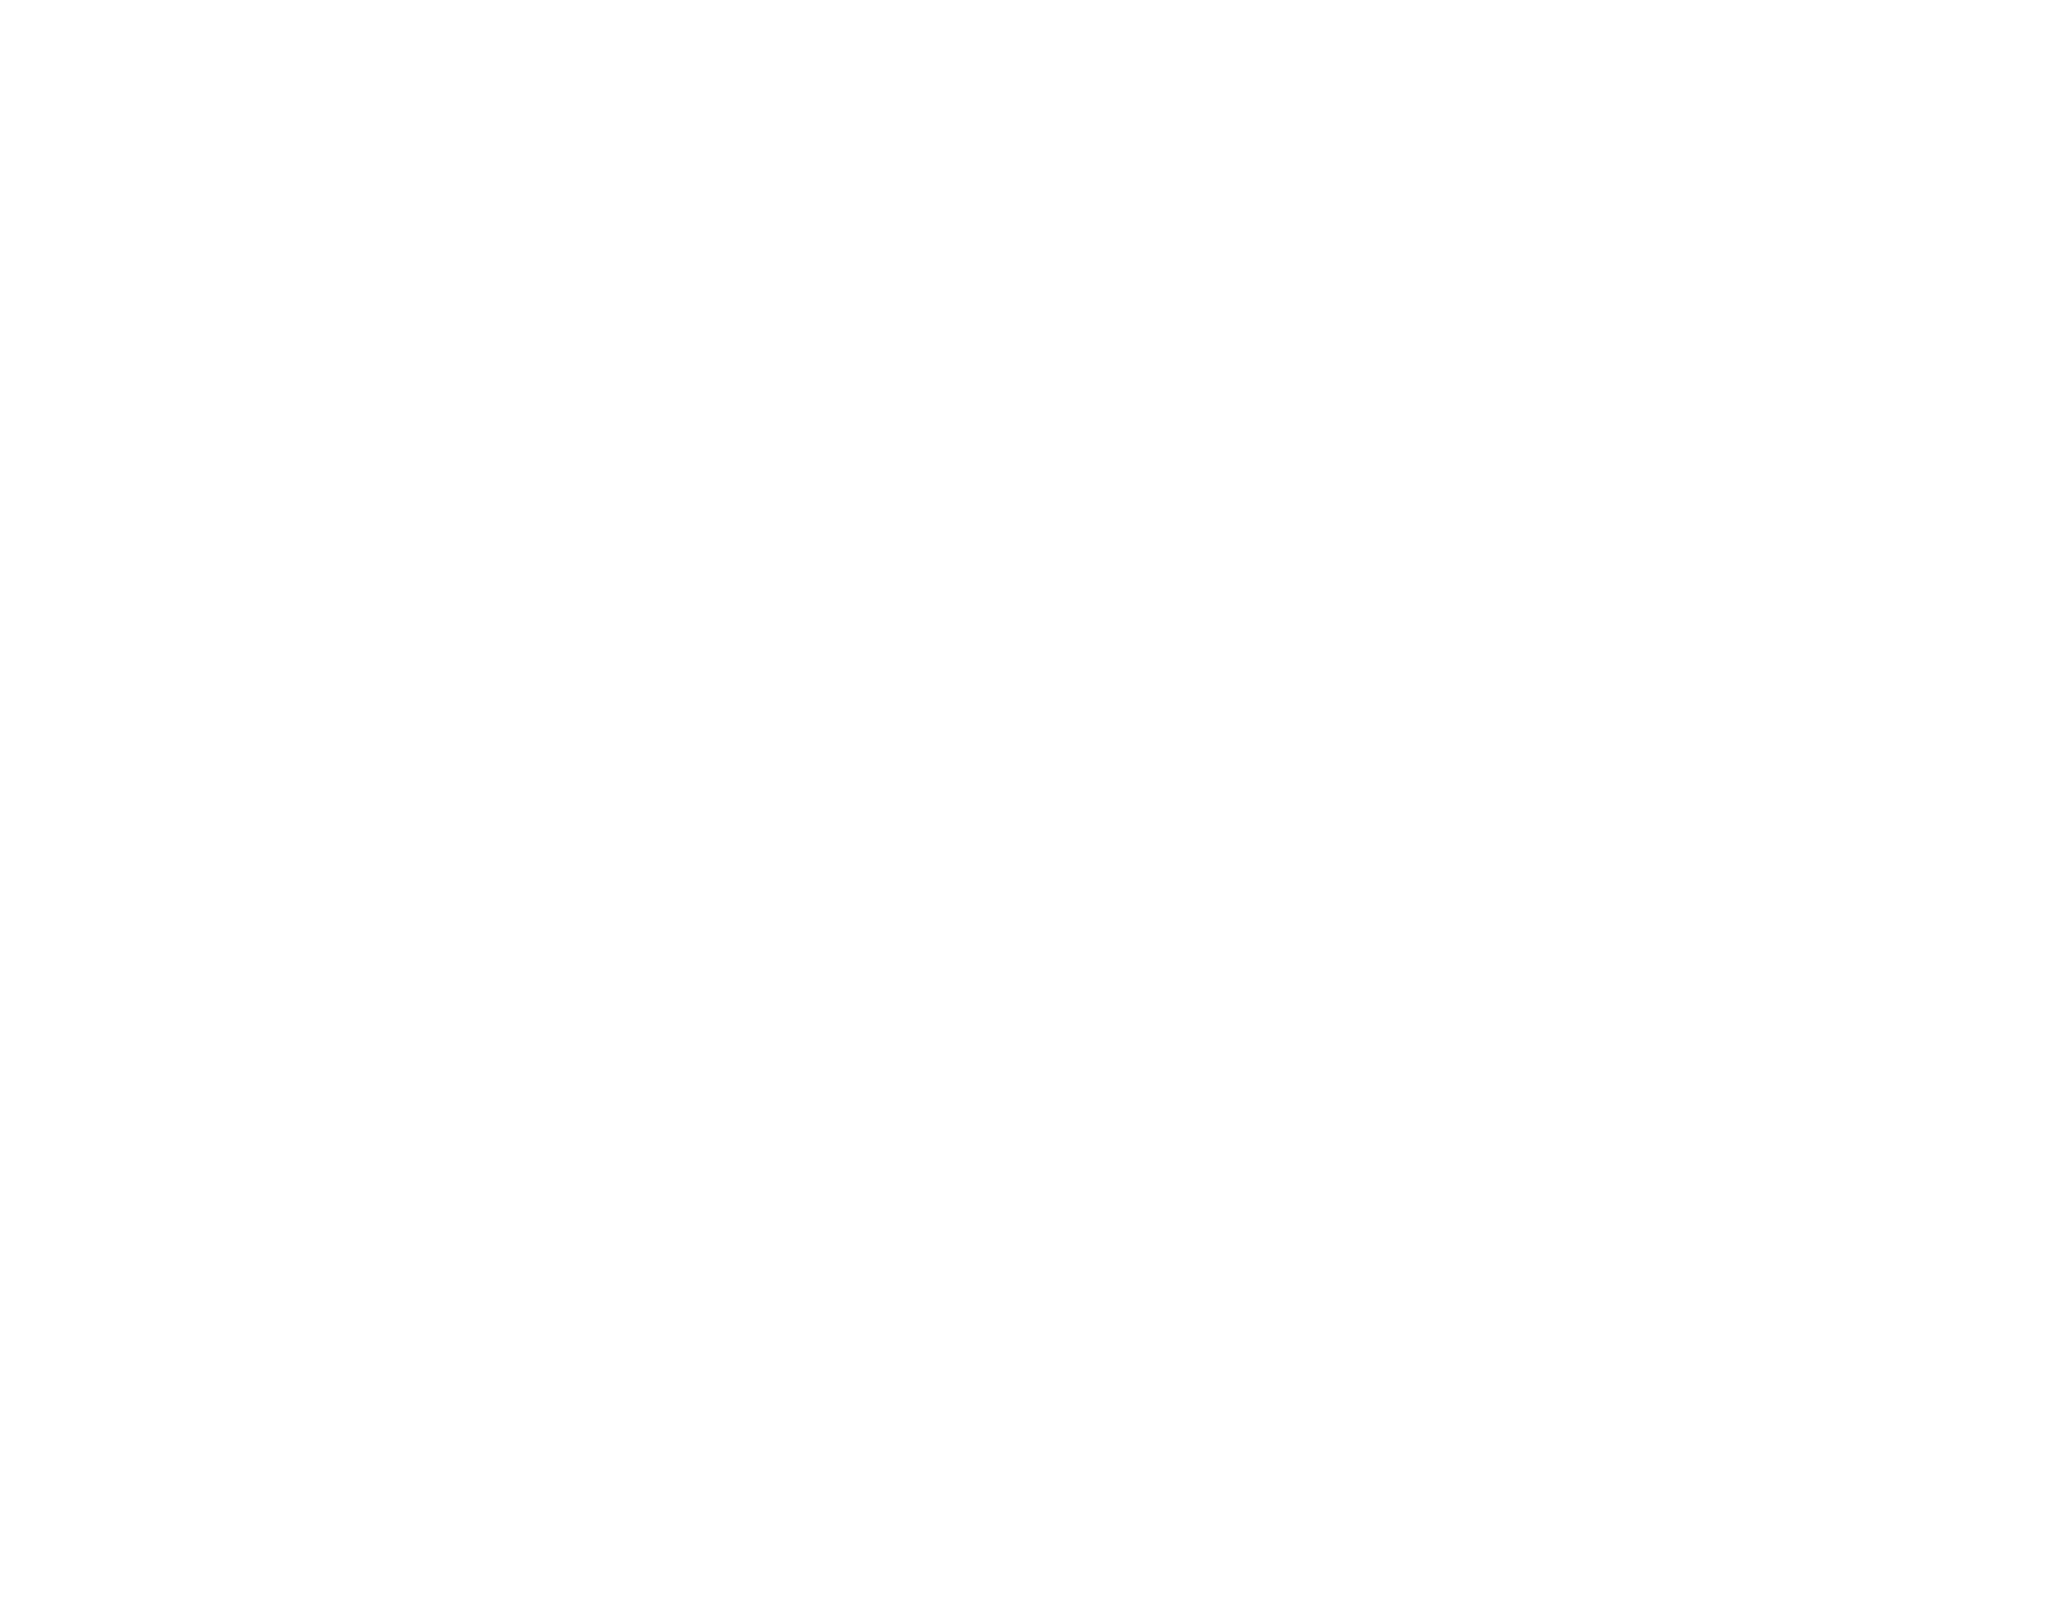 Baida Engineering